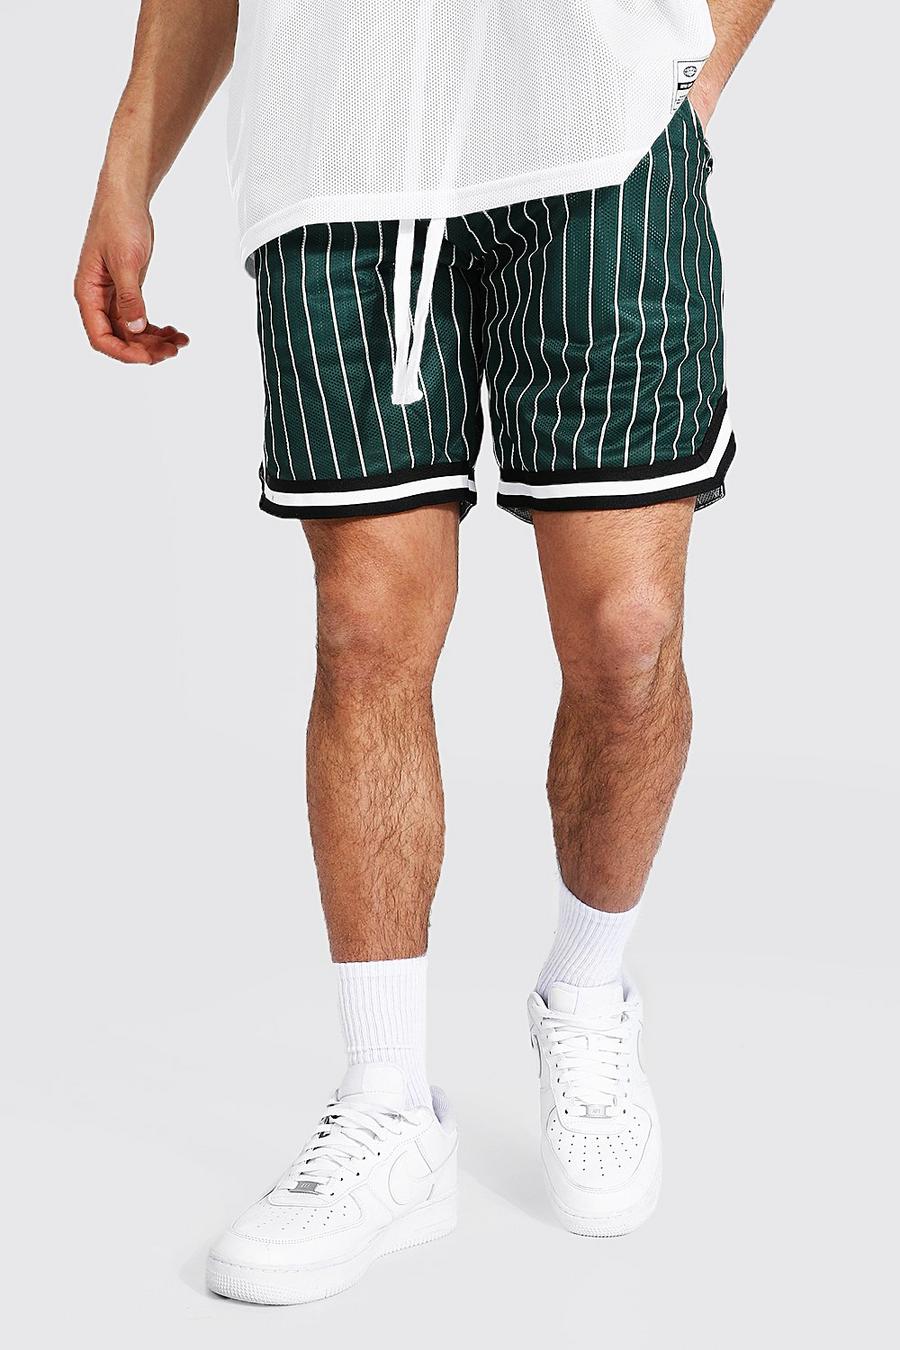 Pantalones cortos de baloncesto con cinta y raya diplomática Airtex, Verde image number 1